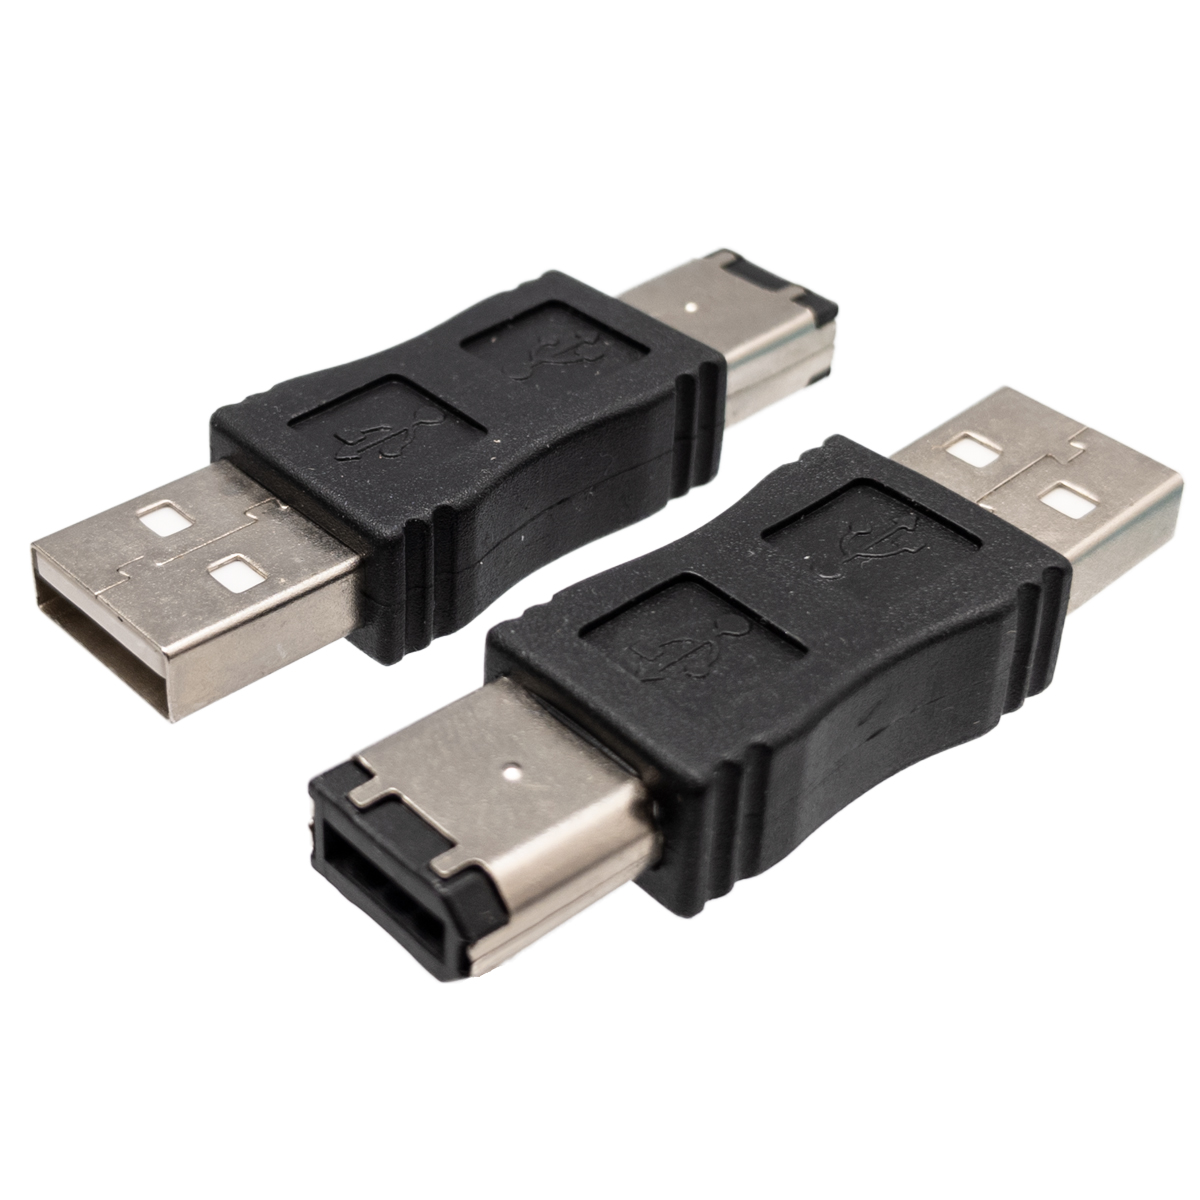 USB A MACHO - IEEE 1394 6P. MACHO